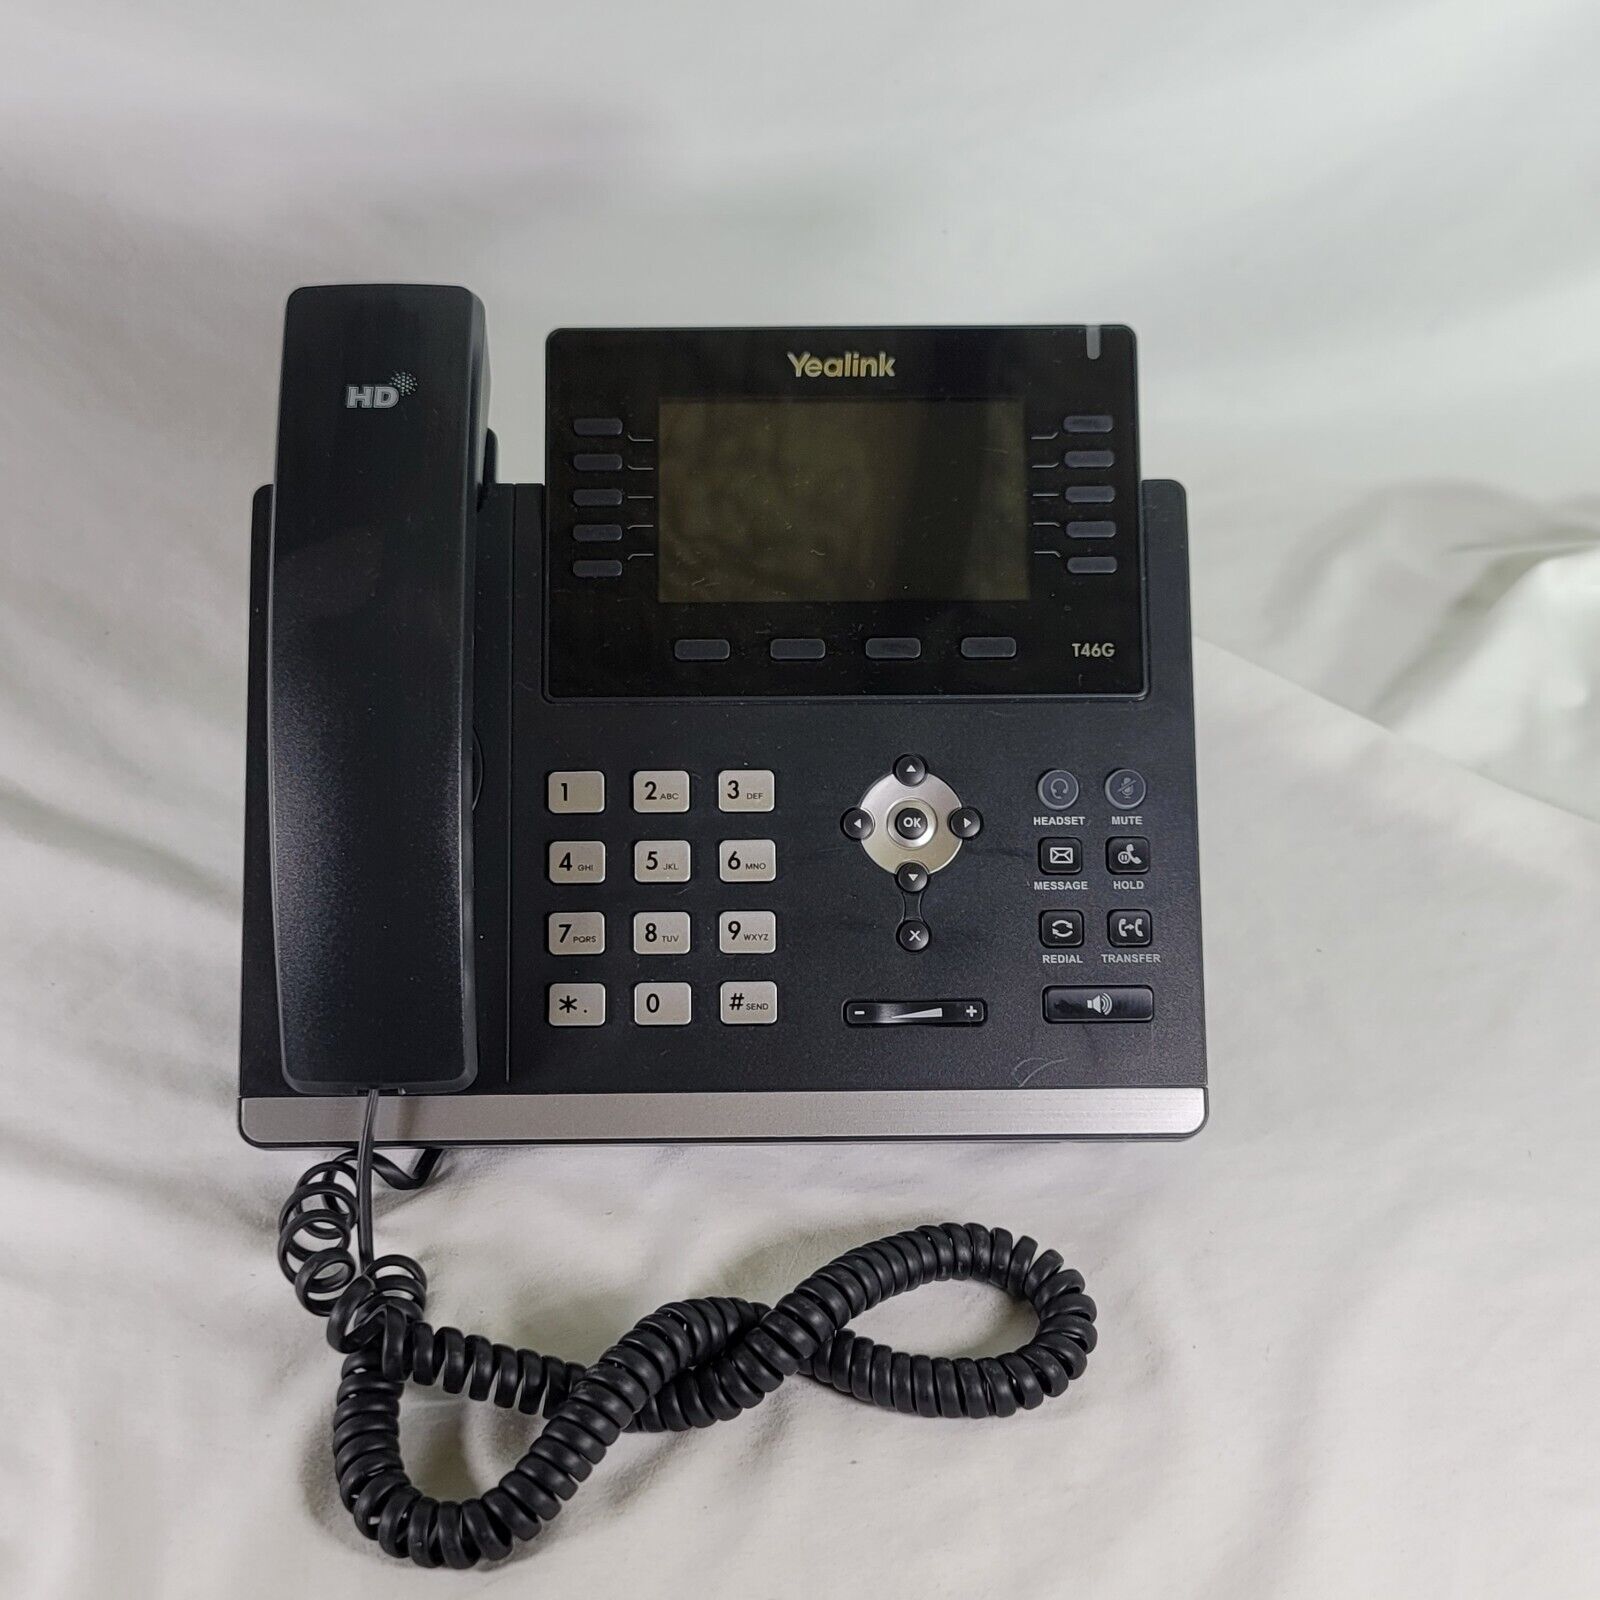 Yealink SIP-T46G IP Phone - Used - Working 